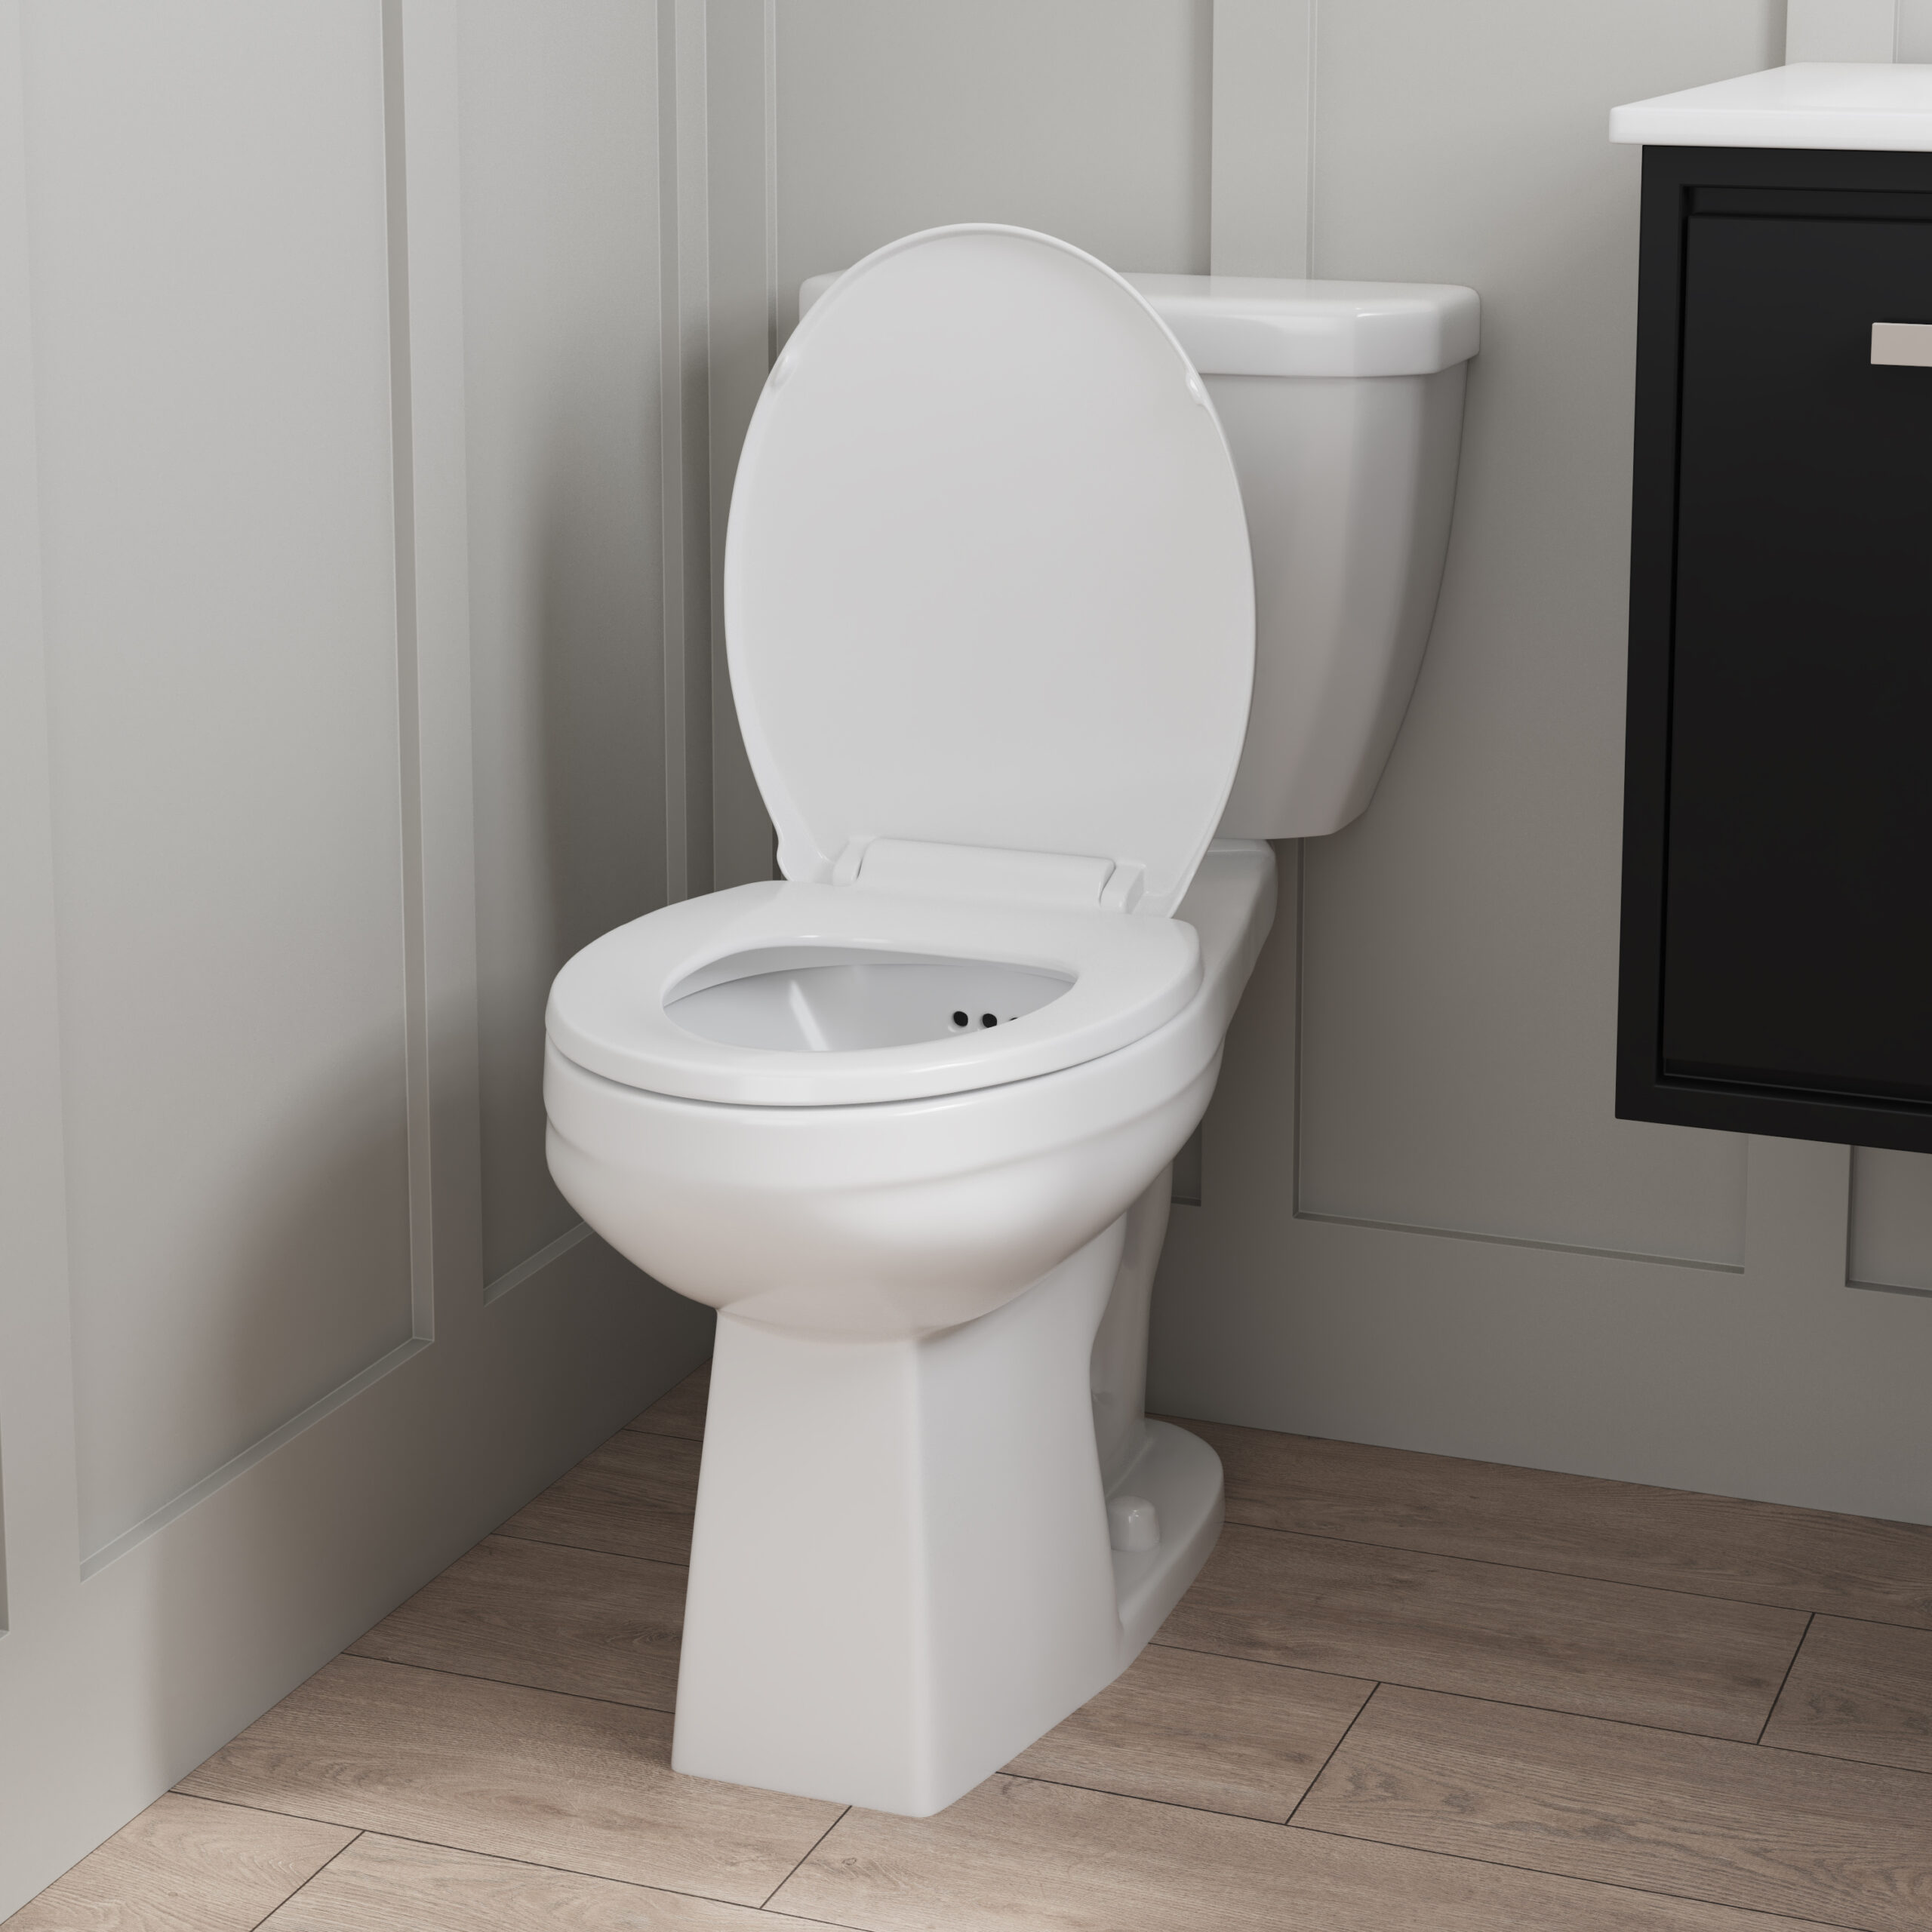 Suto Flush Guard Toilet - 4740FGOXU - Closeup Angle View Room Scene